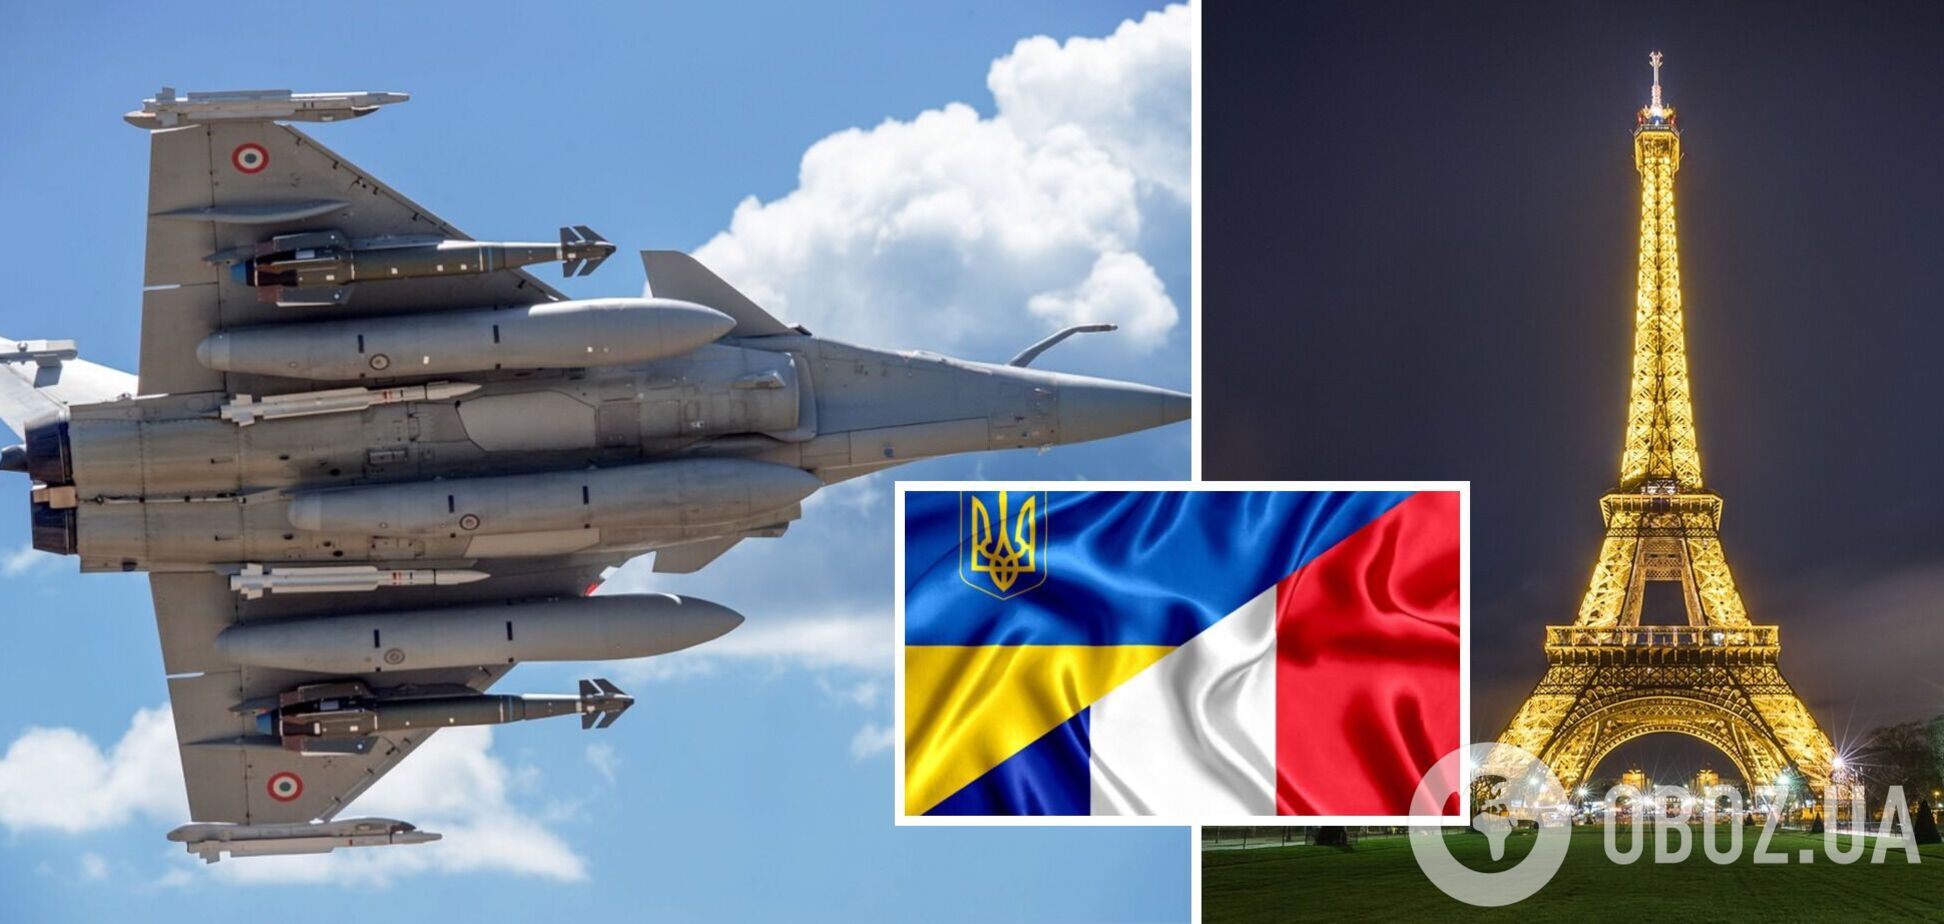 Франция рассматривает возможность передачи Украине истребителей, но есть условия – The Guardian